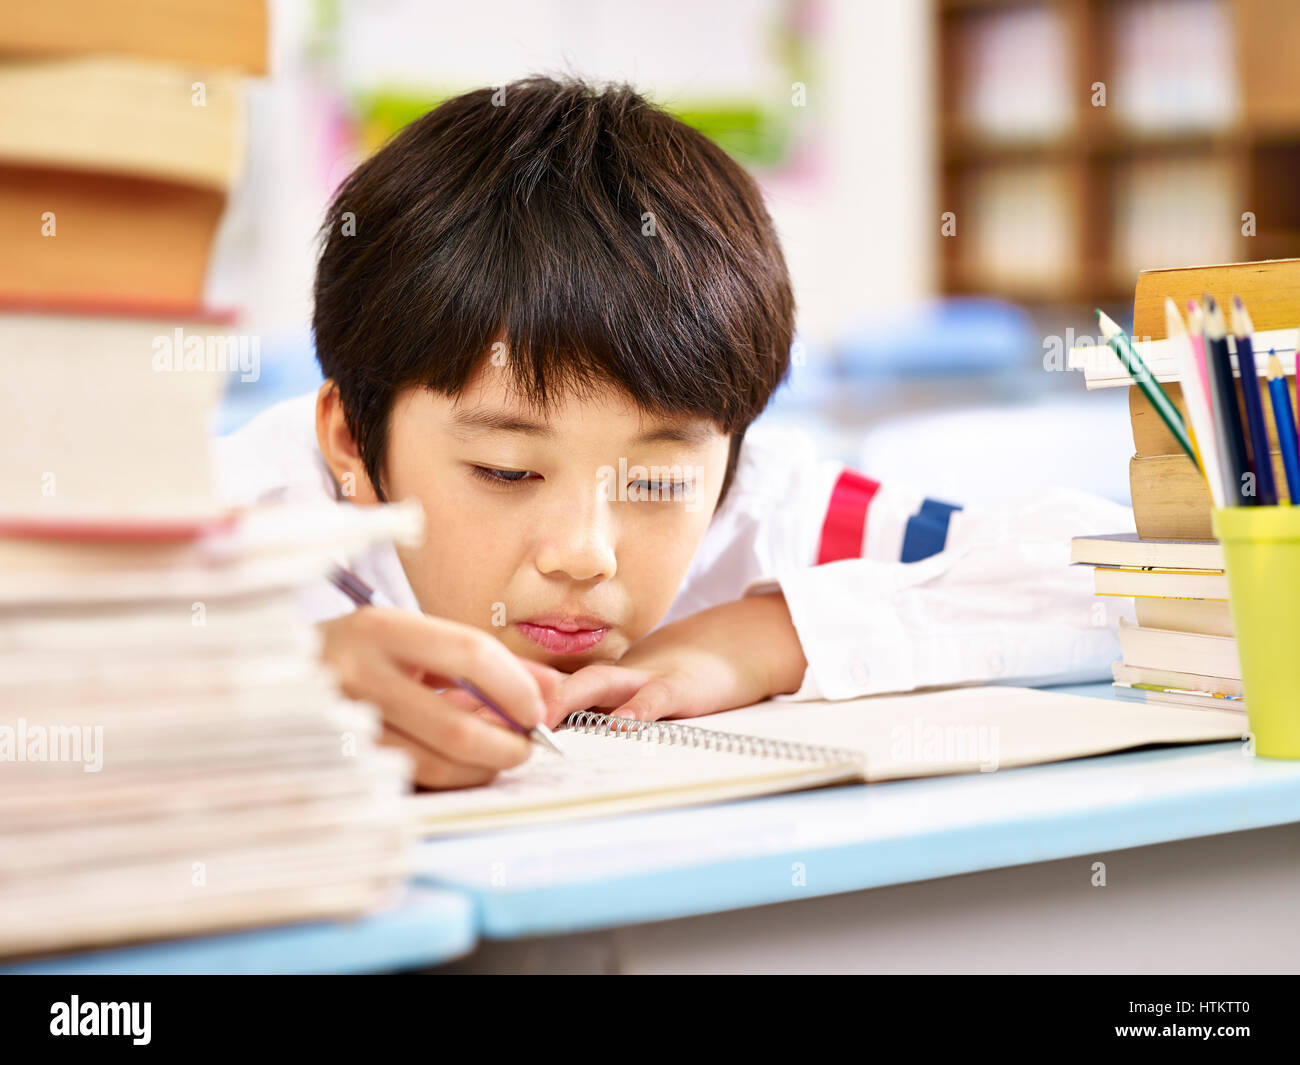 asian kid doing homework